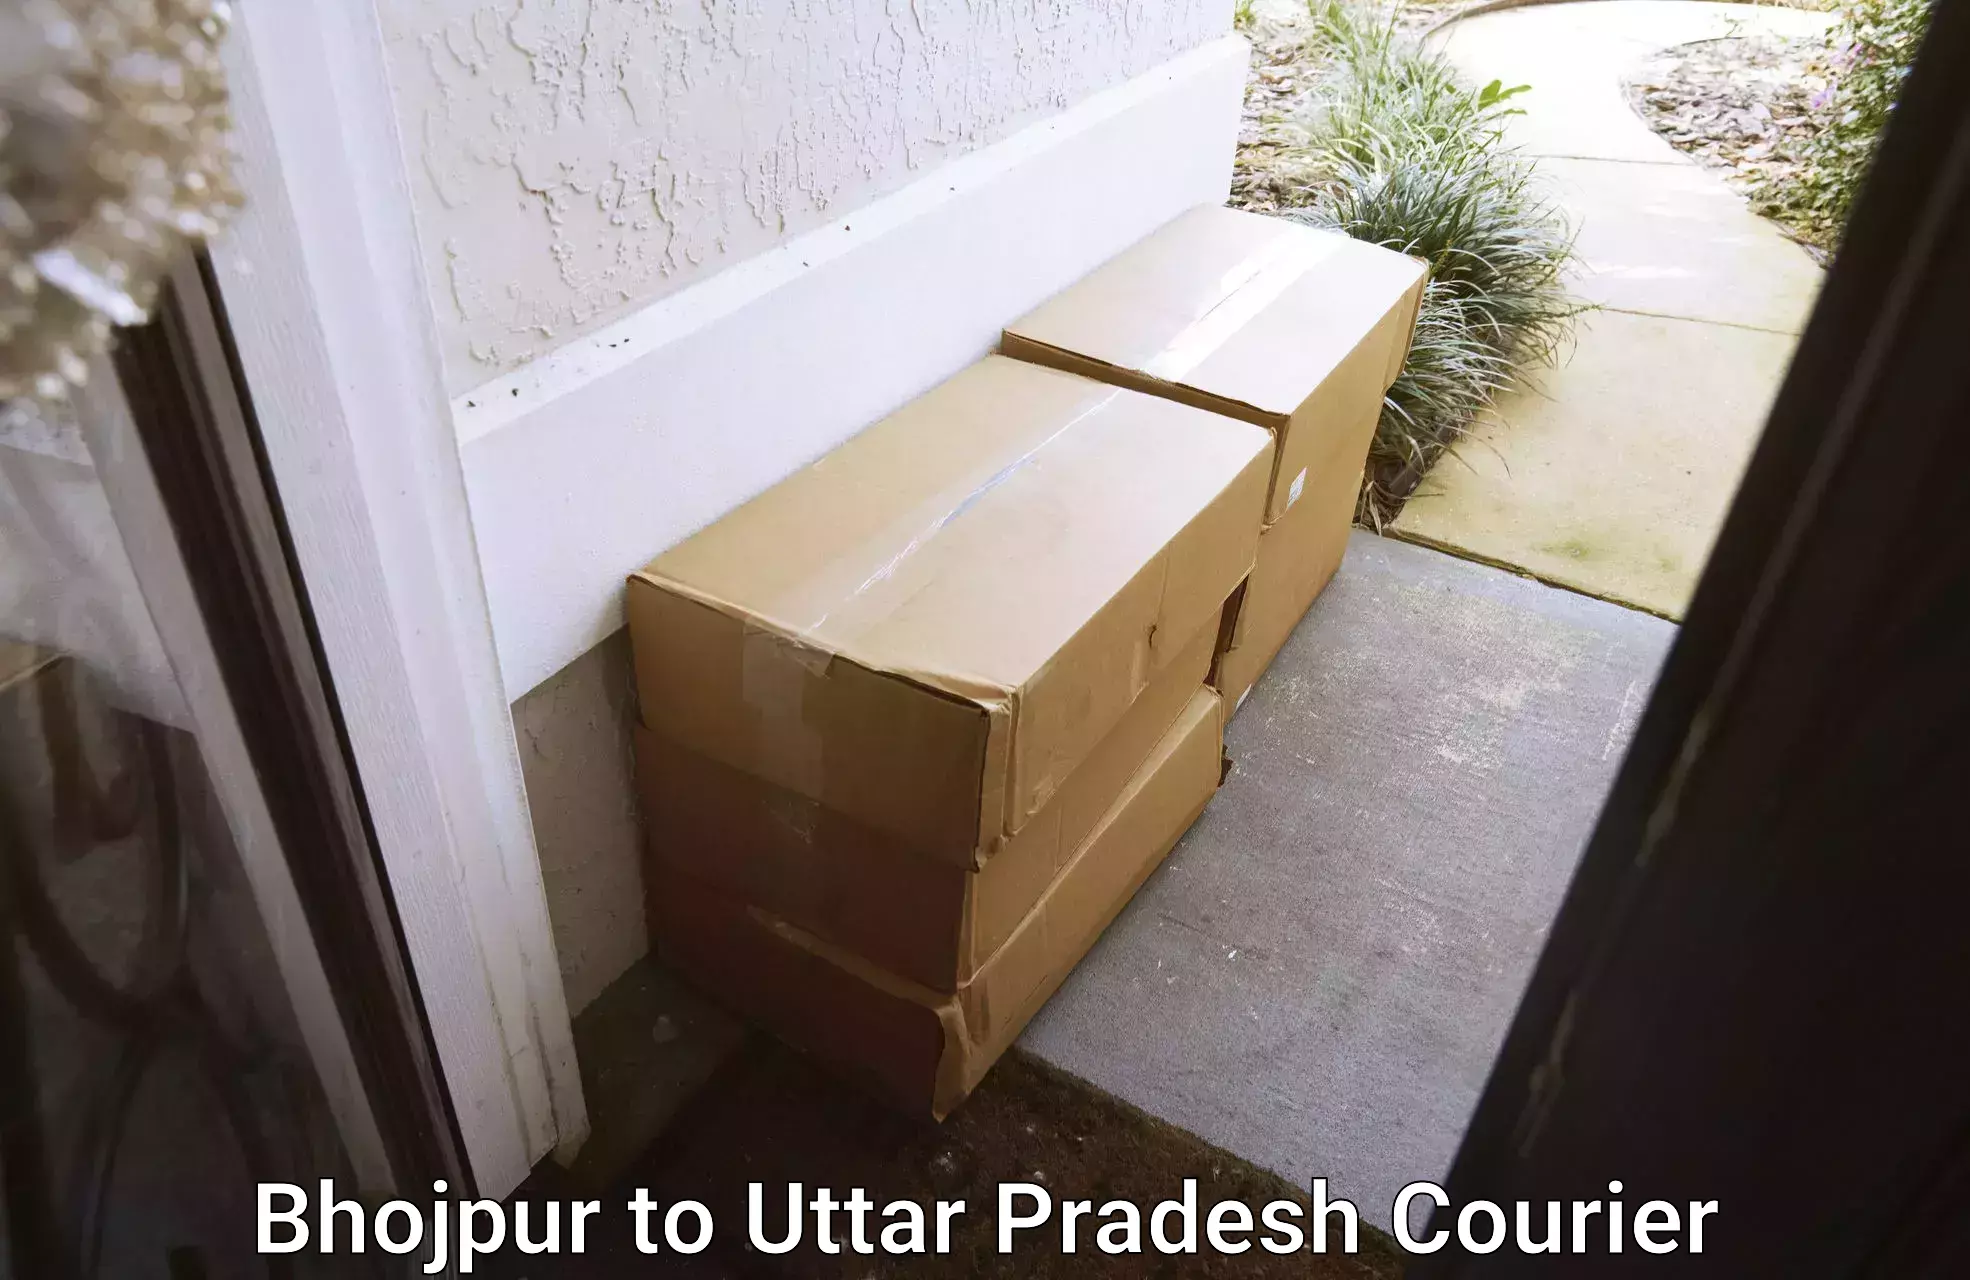 Household moving companies in Bhojpur to Bahraich